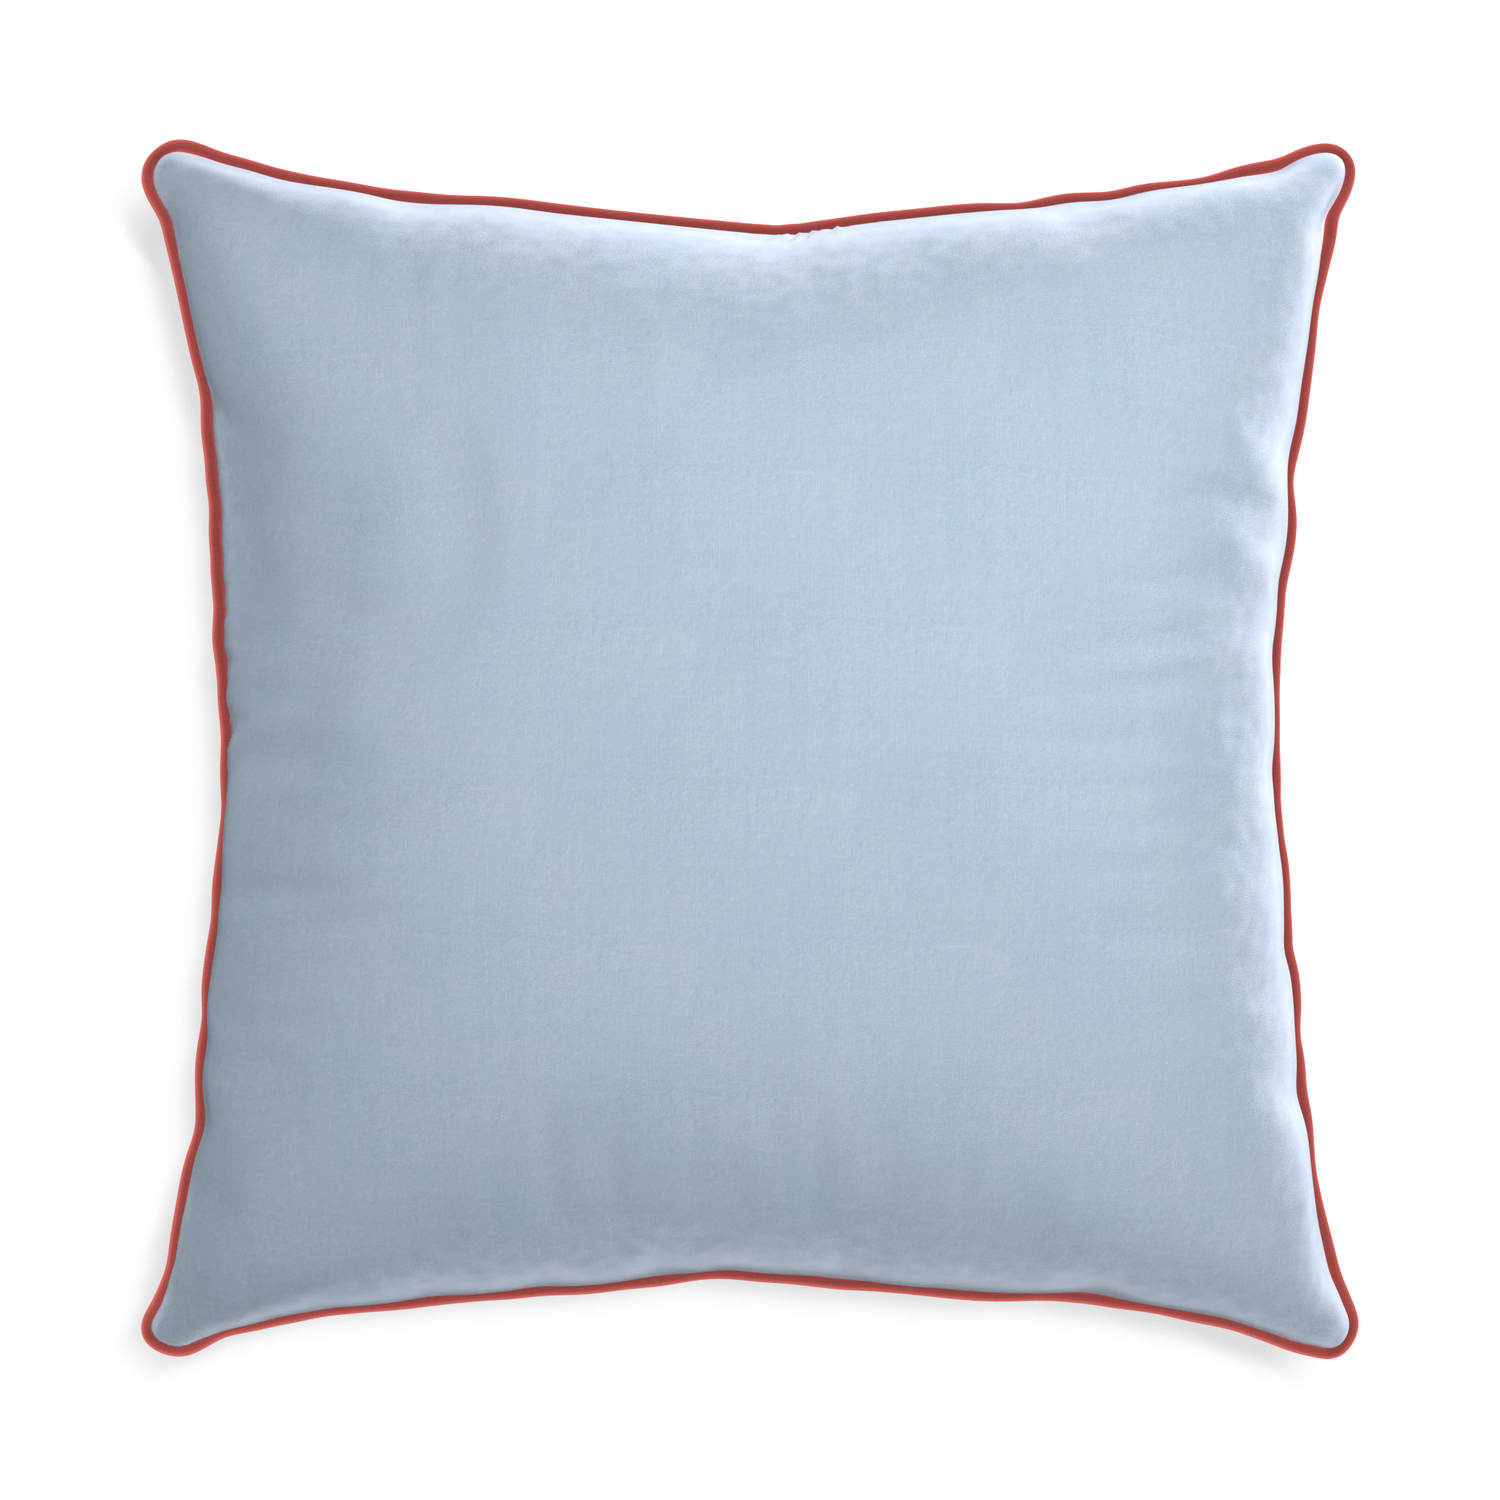 Euro-sham sky velvet custom pillow with c piping on white background